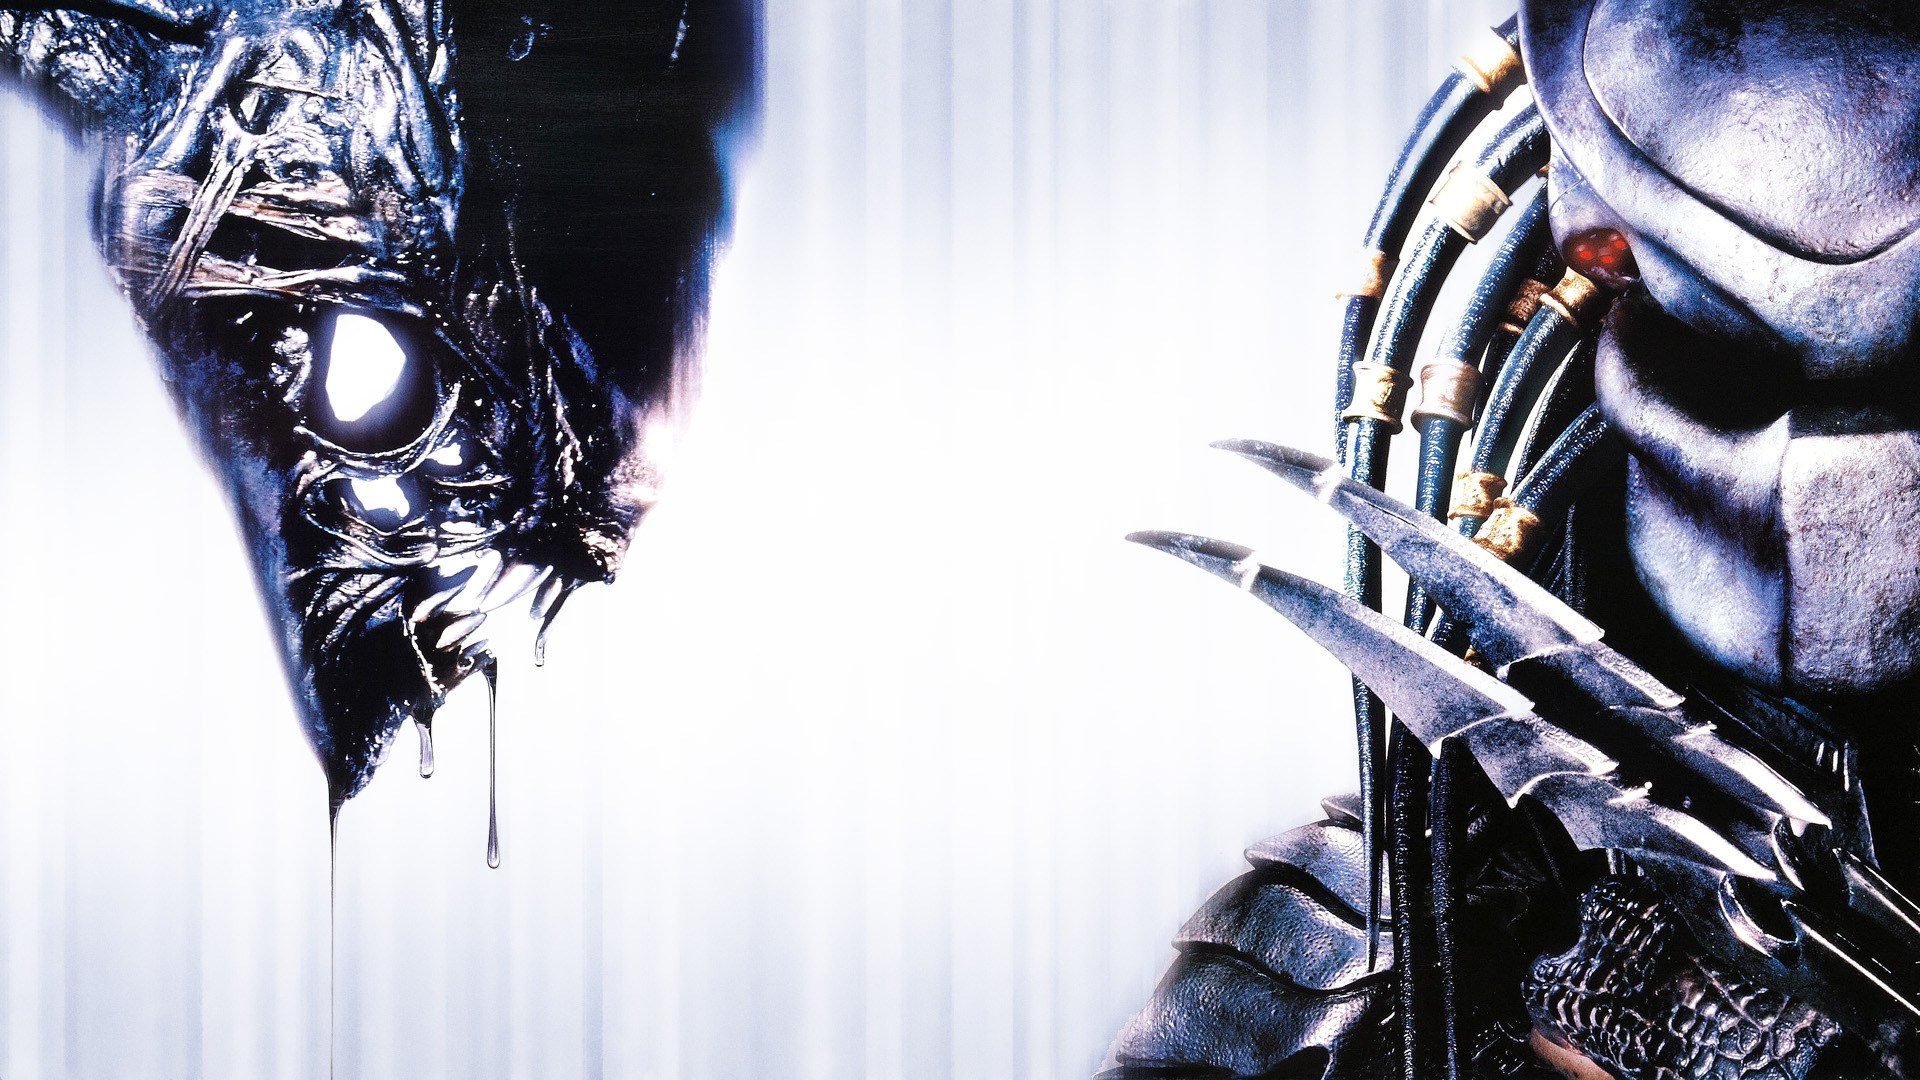 Movie of the week: Buy “Alien vs. Predator ”, by director Paul W. S. Anderson, for R $ 9.90!